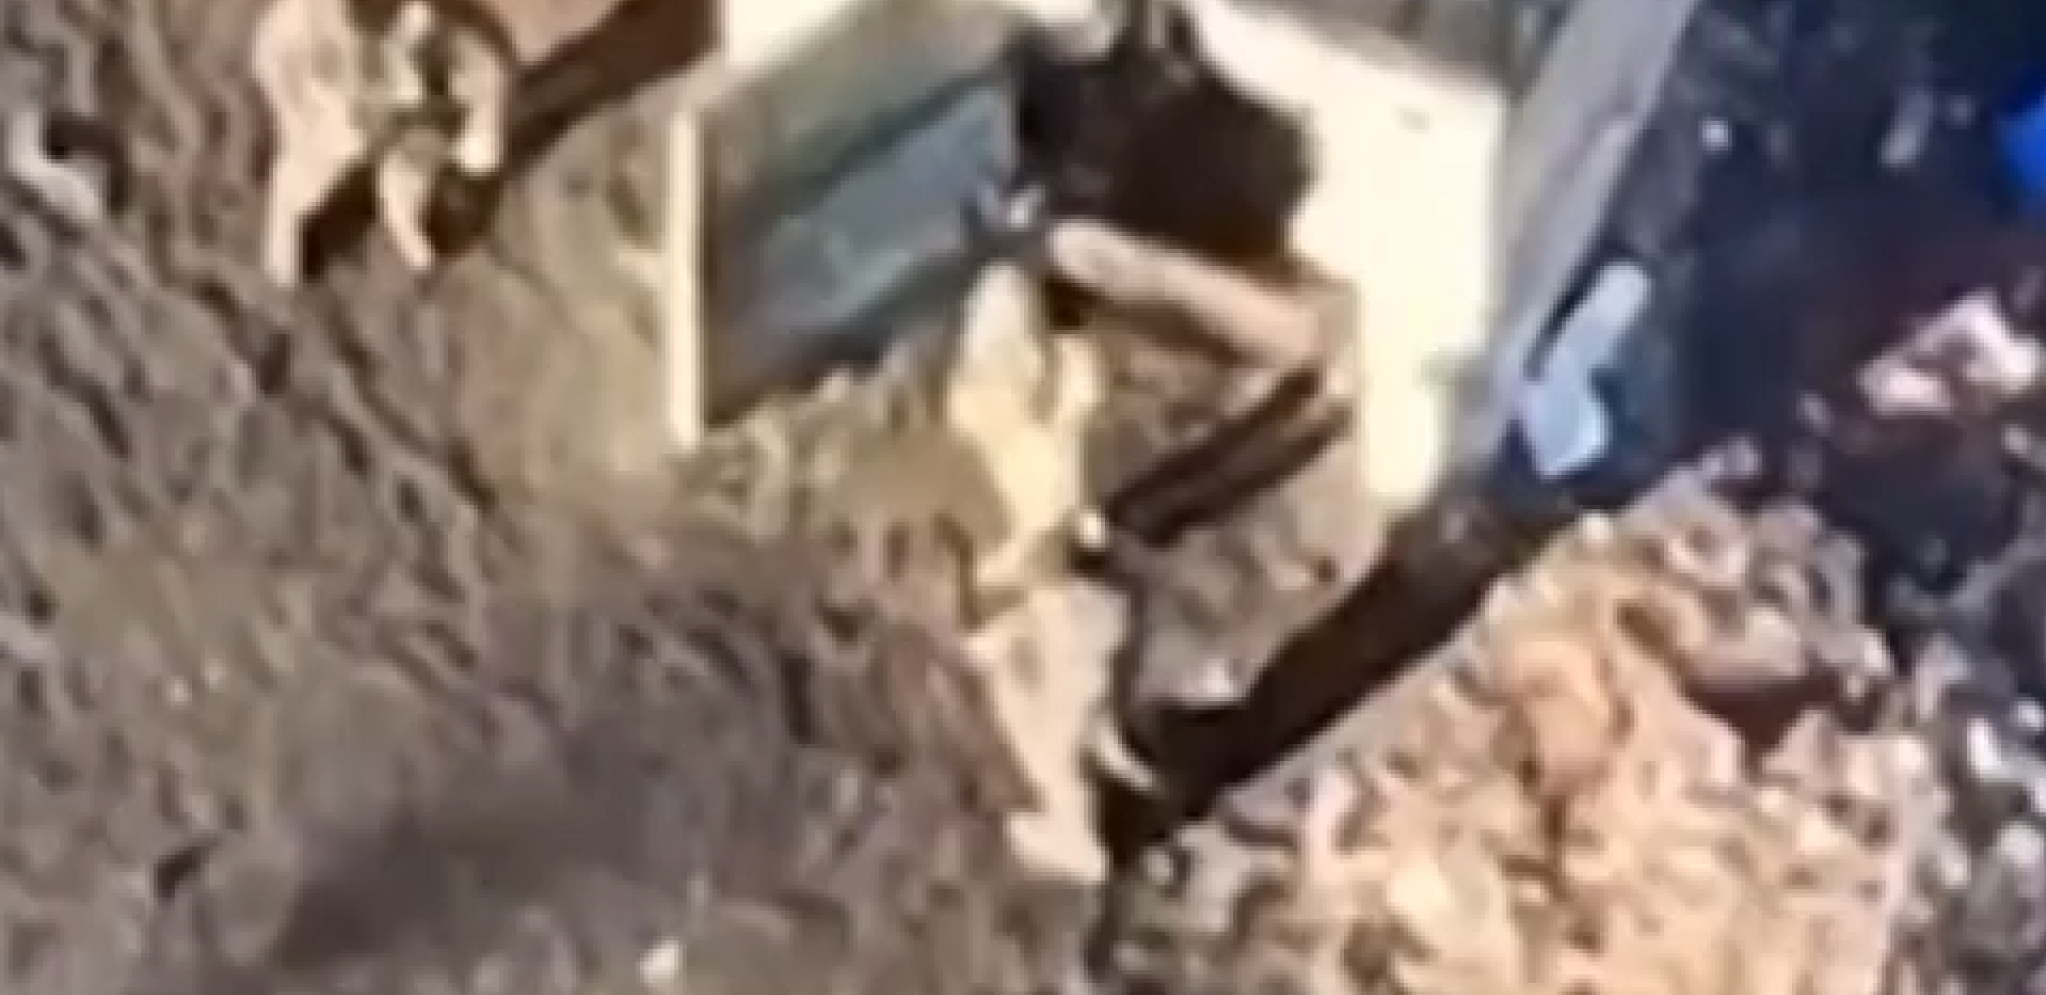 UŽAS! Ukrajinski vojnik direktno pogođen u udaru drona! (UZNEMIRUJIĆI VIDEO)